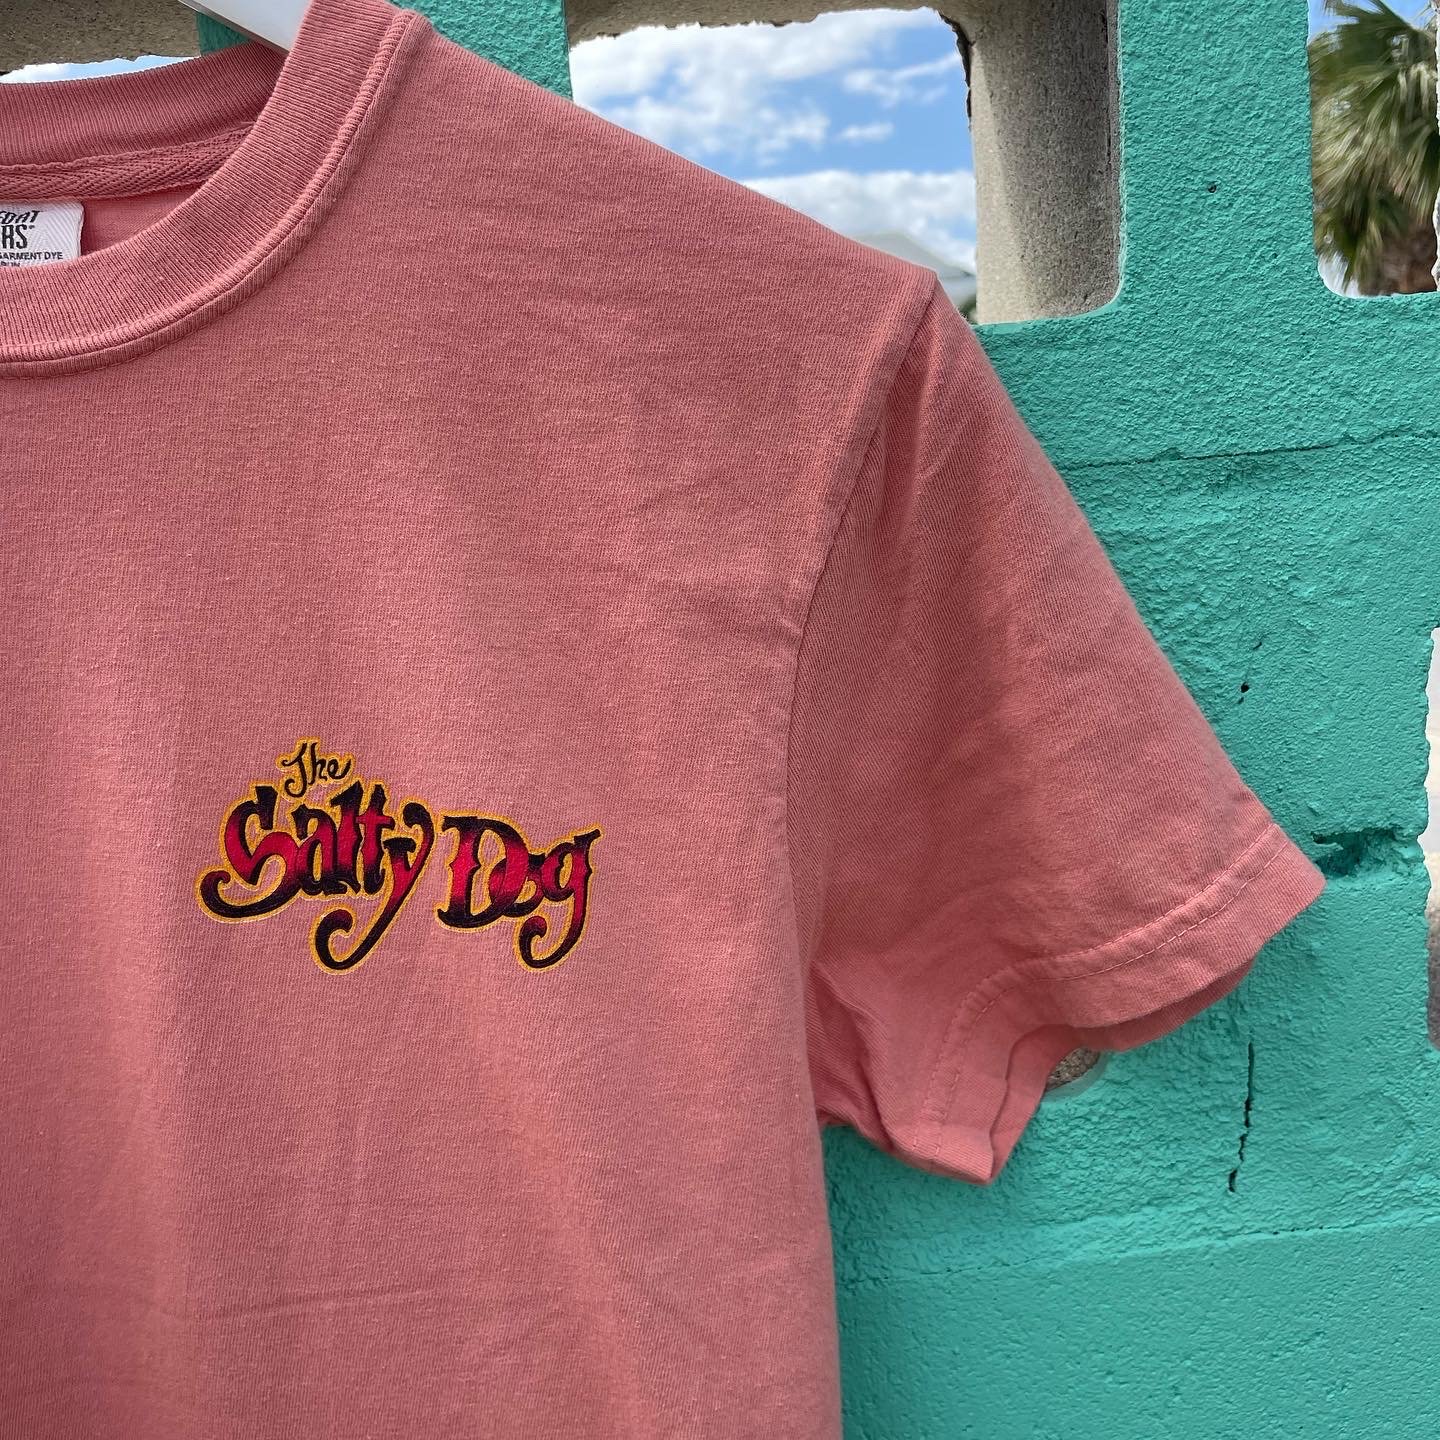 Shop — Salty Dog Surf Shop